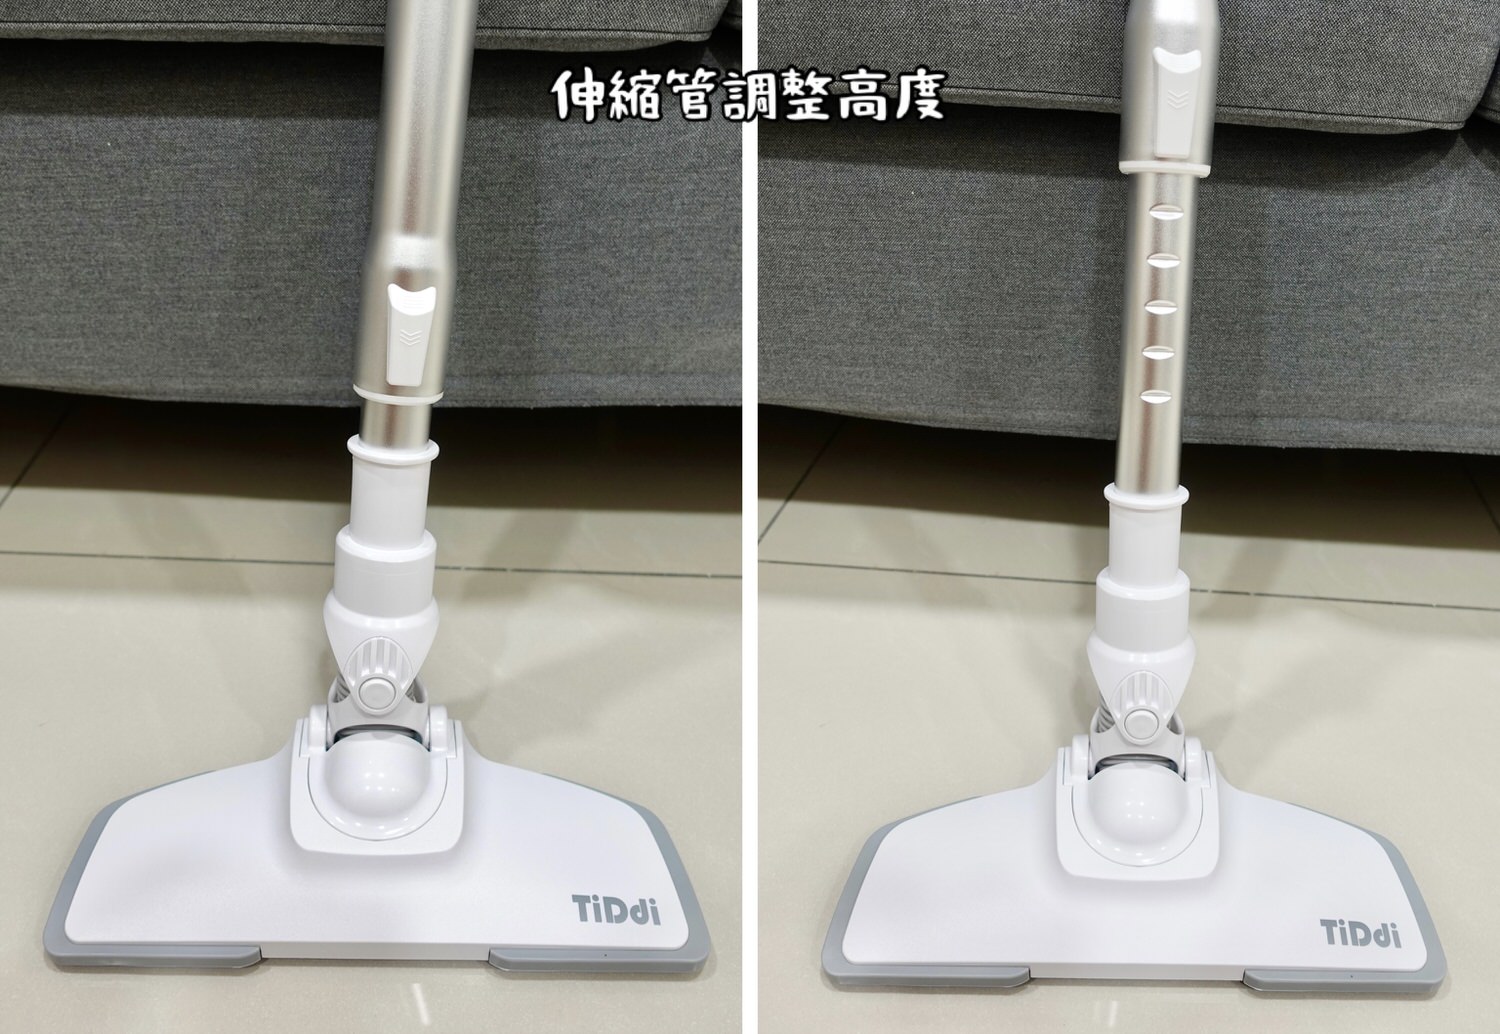 TiDdi S260 無線手持氣旋吸塵器